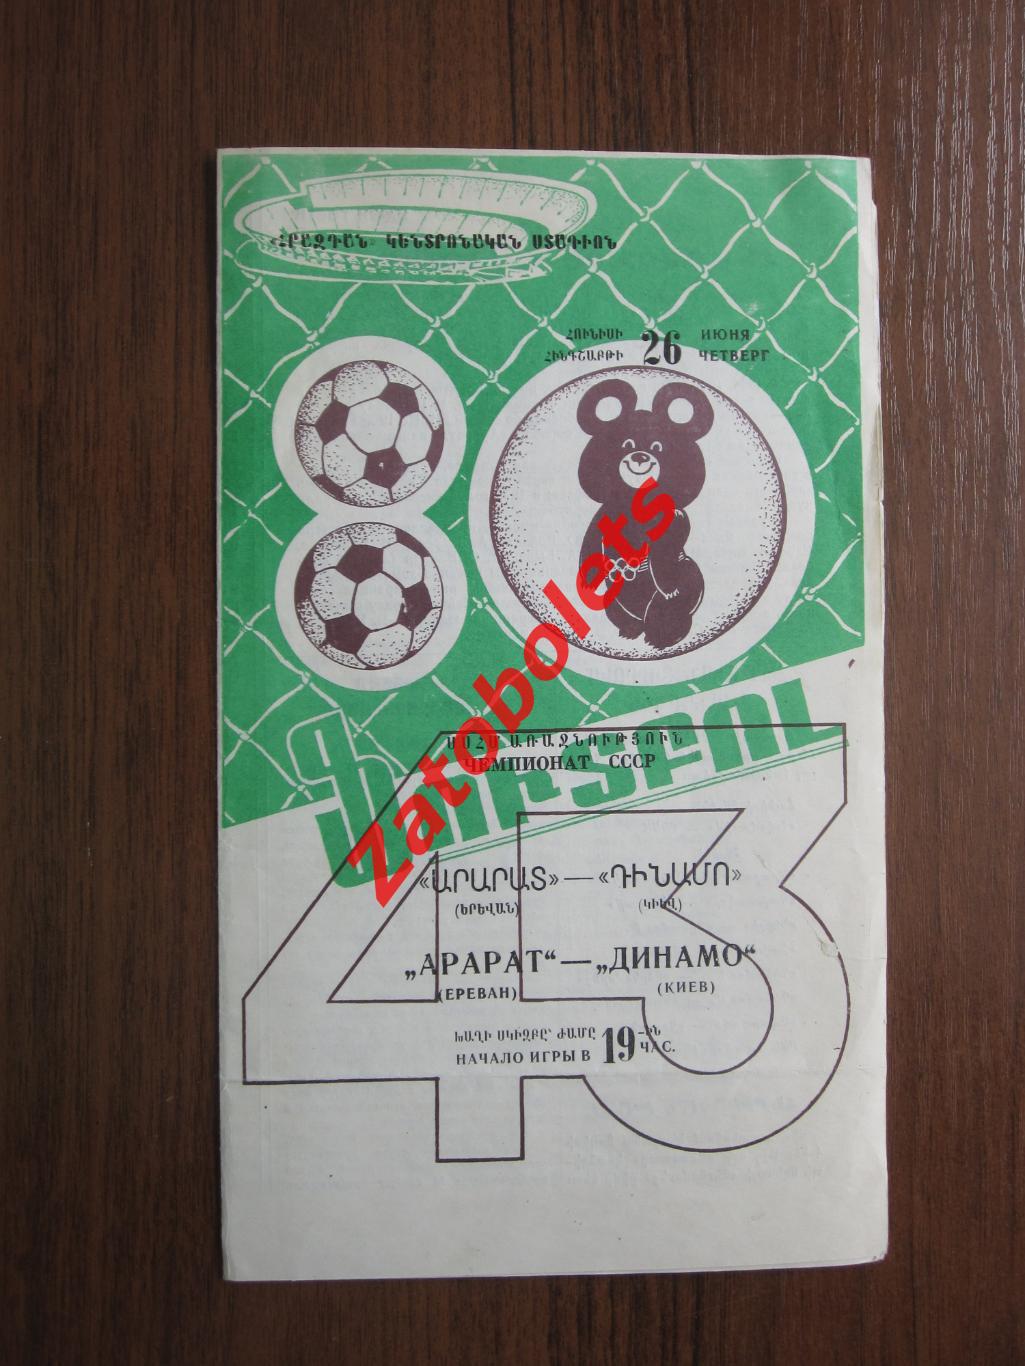 Арарат Ереван - Динамо Киев 1980